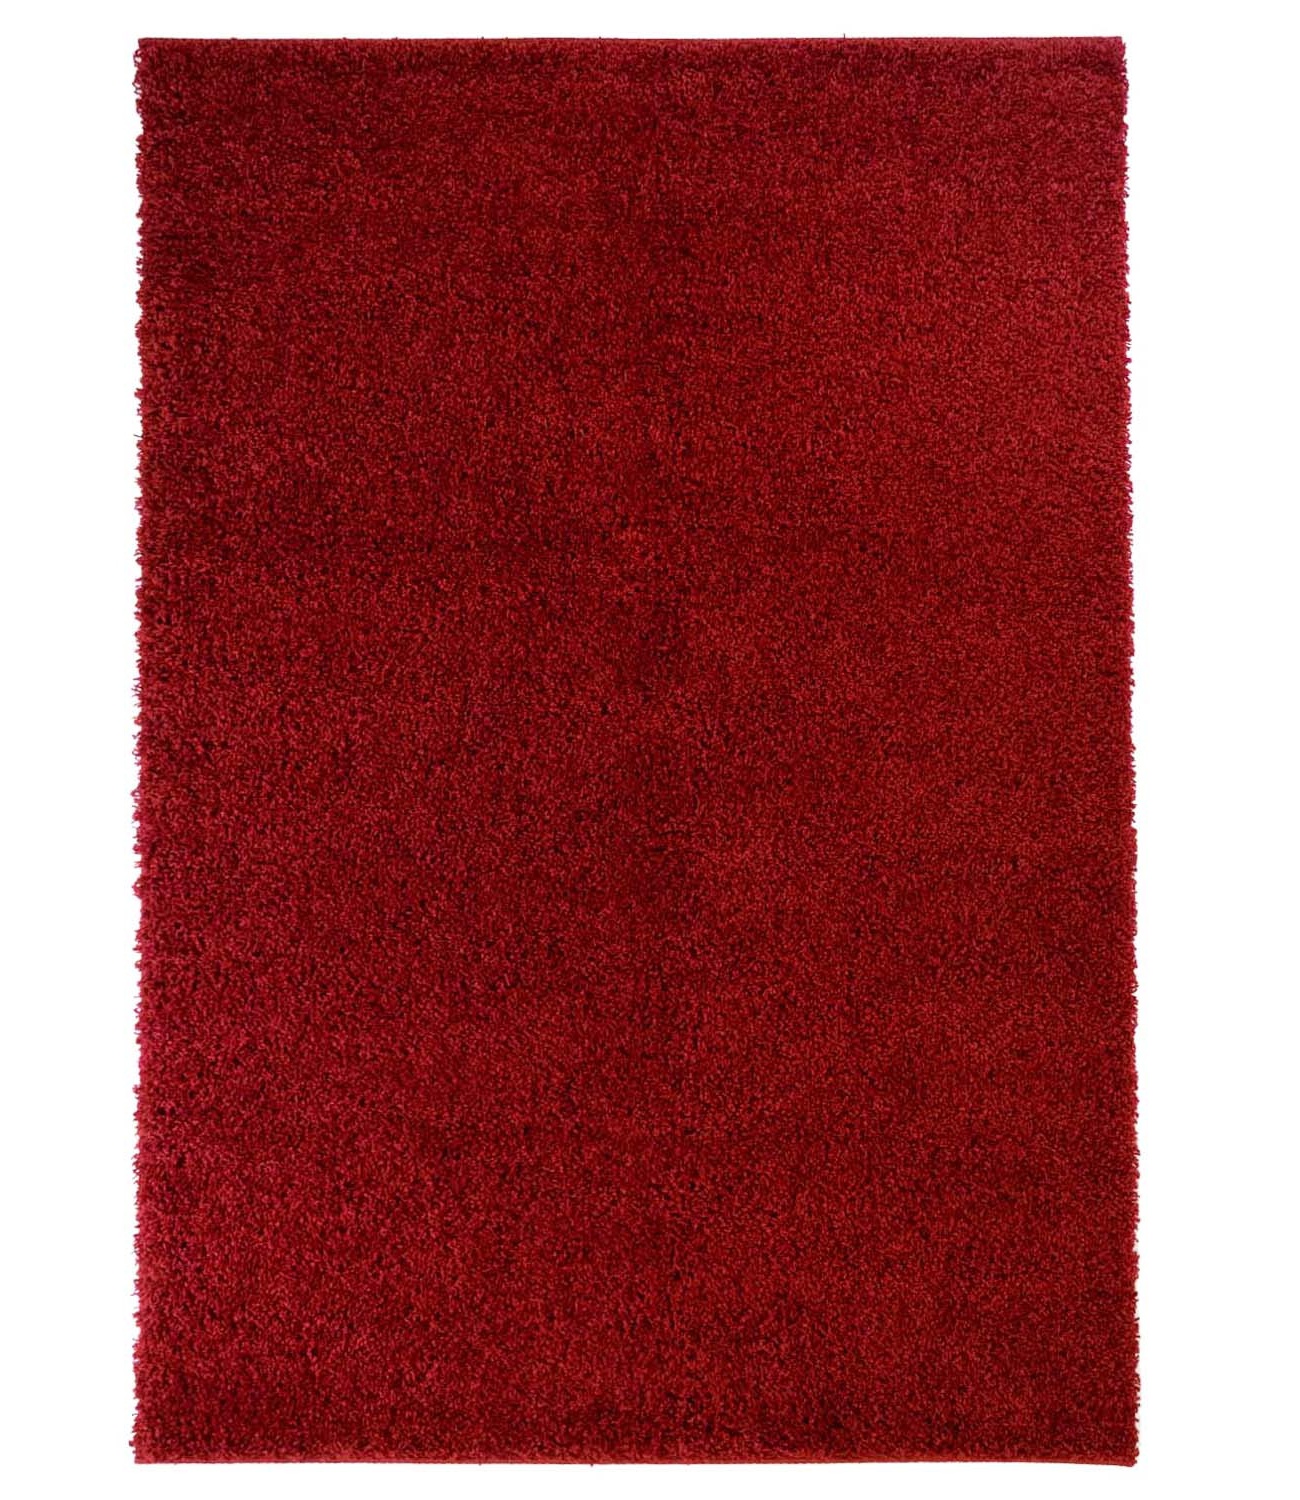 Trim ryeteppe teppe rød rund 60x120 cm 80x 150 cm 140x200 cm 160x230 cm 200x300 cm